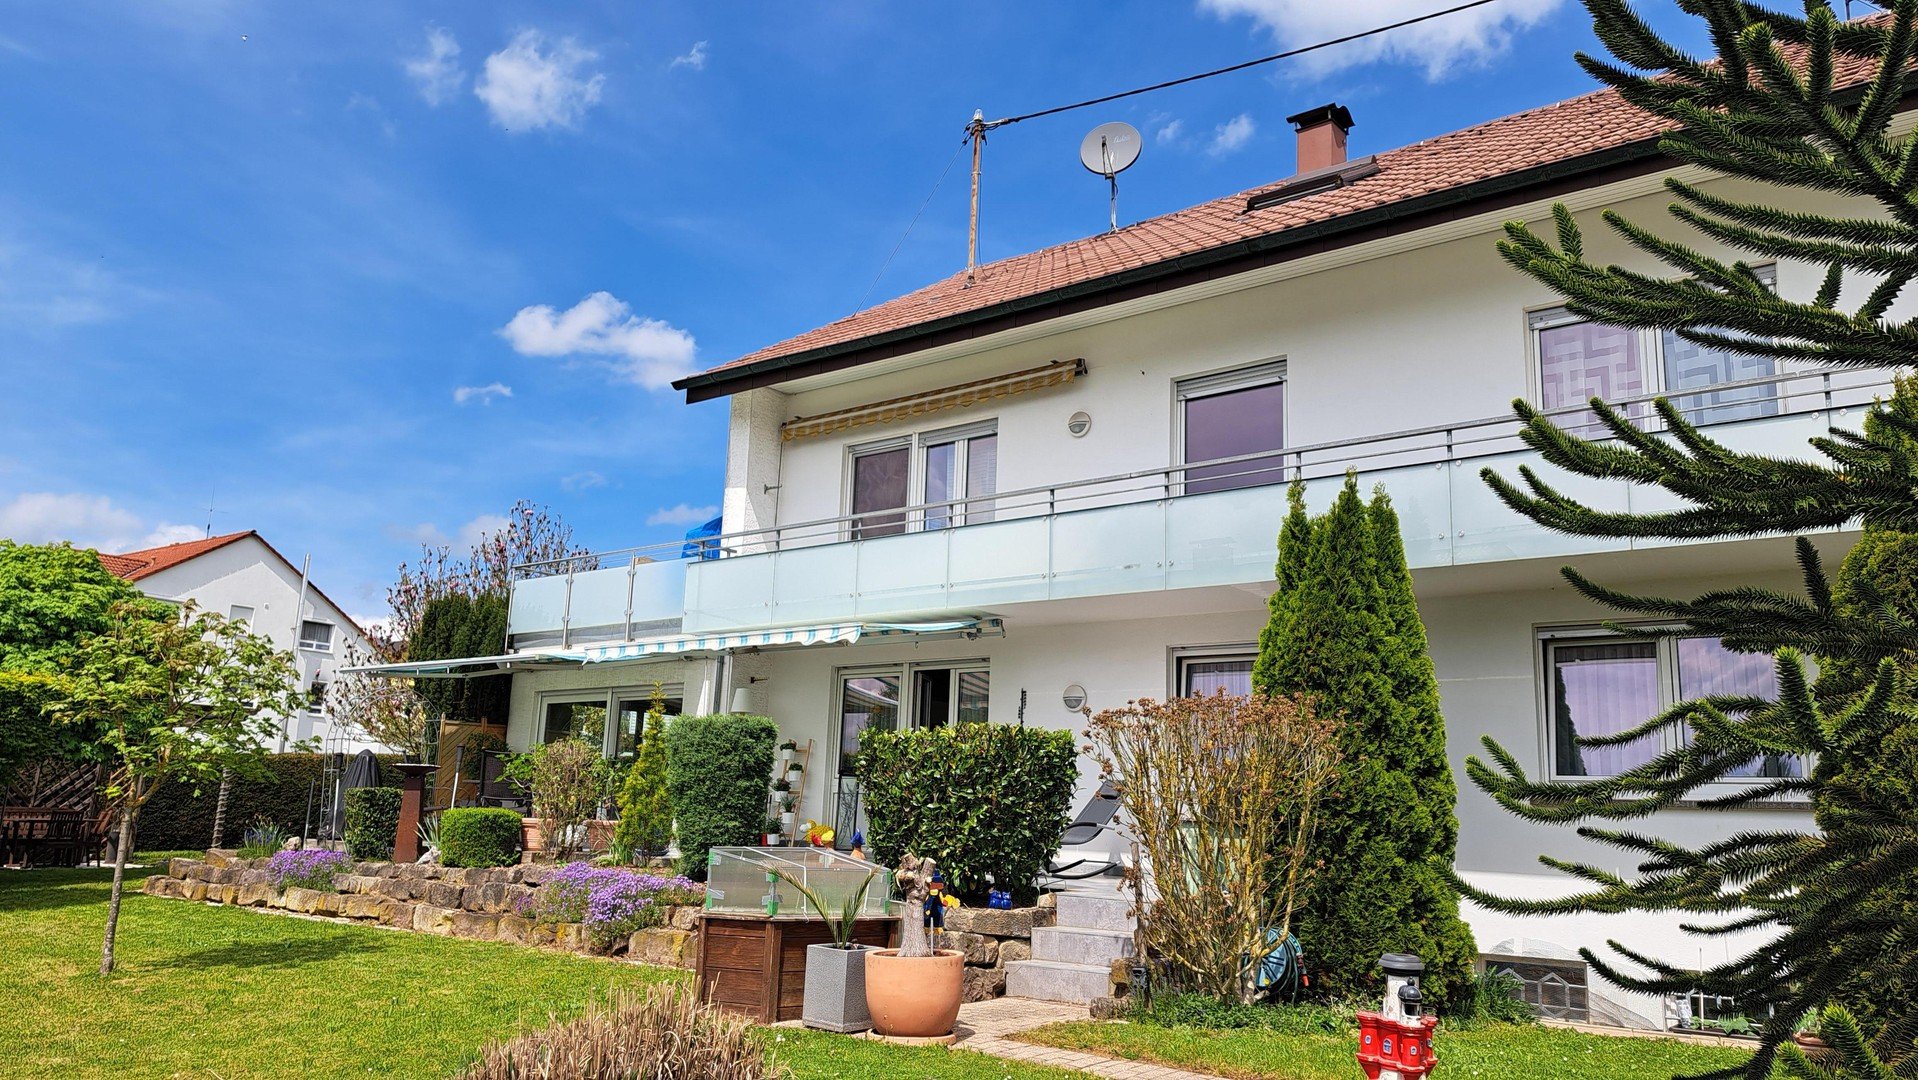 Freistehendes 3-Familienhaus in schöner Lage in Maichingen (Privatverkauf – provisionsfrei)